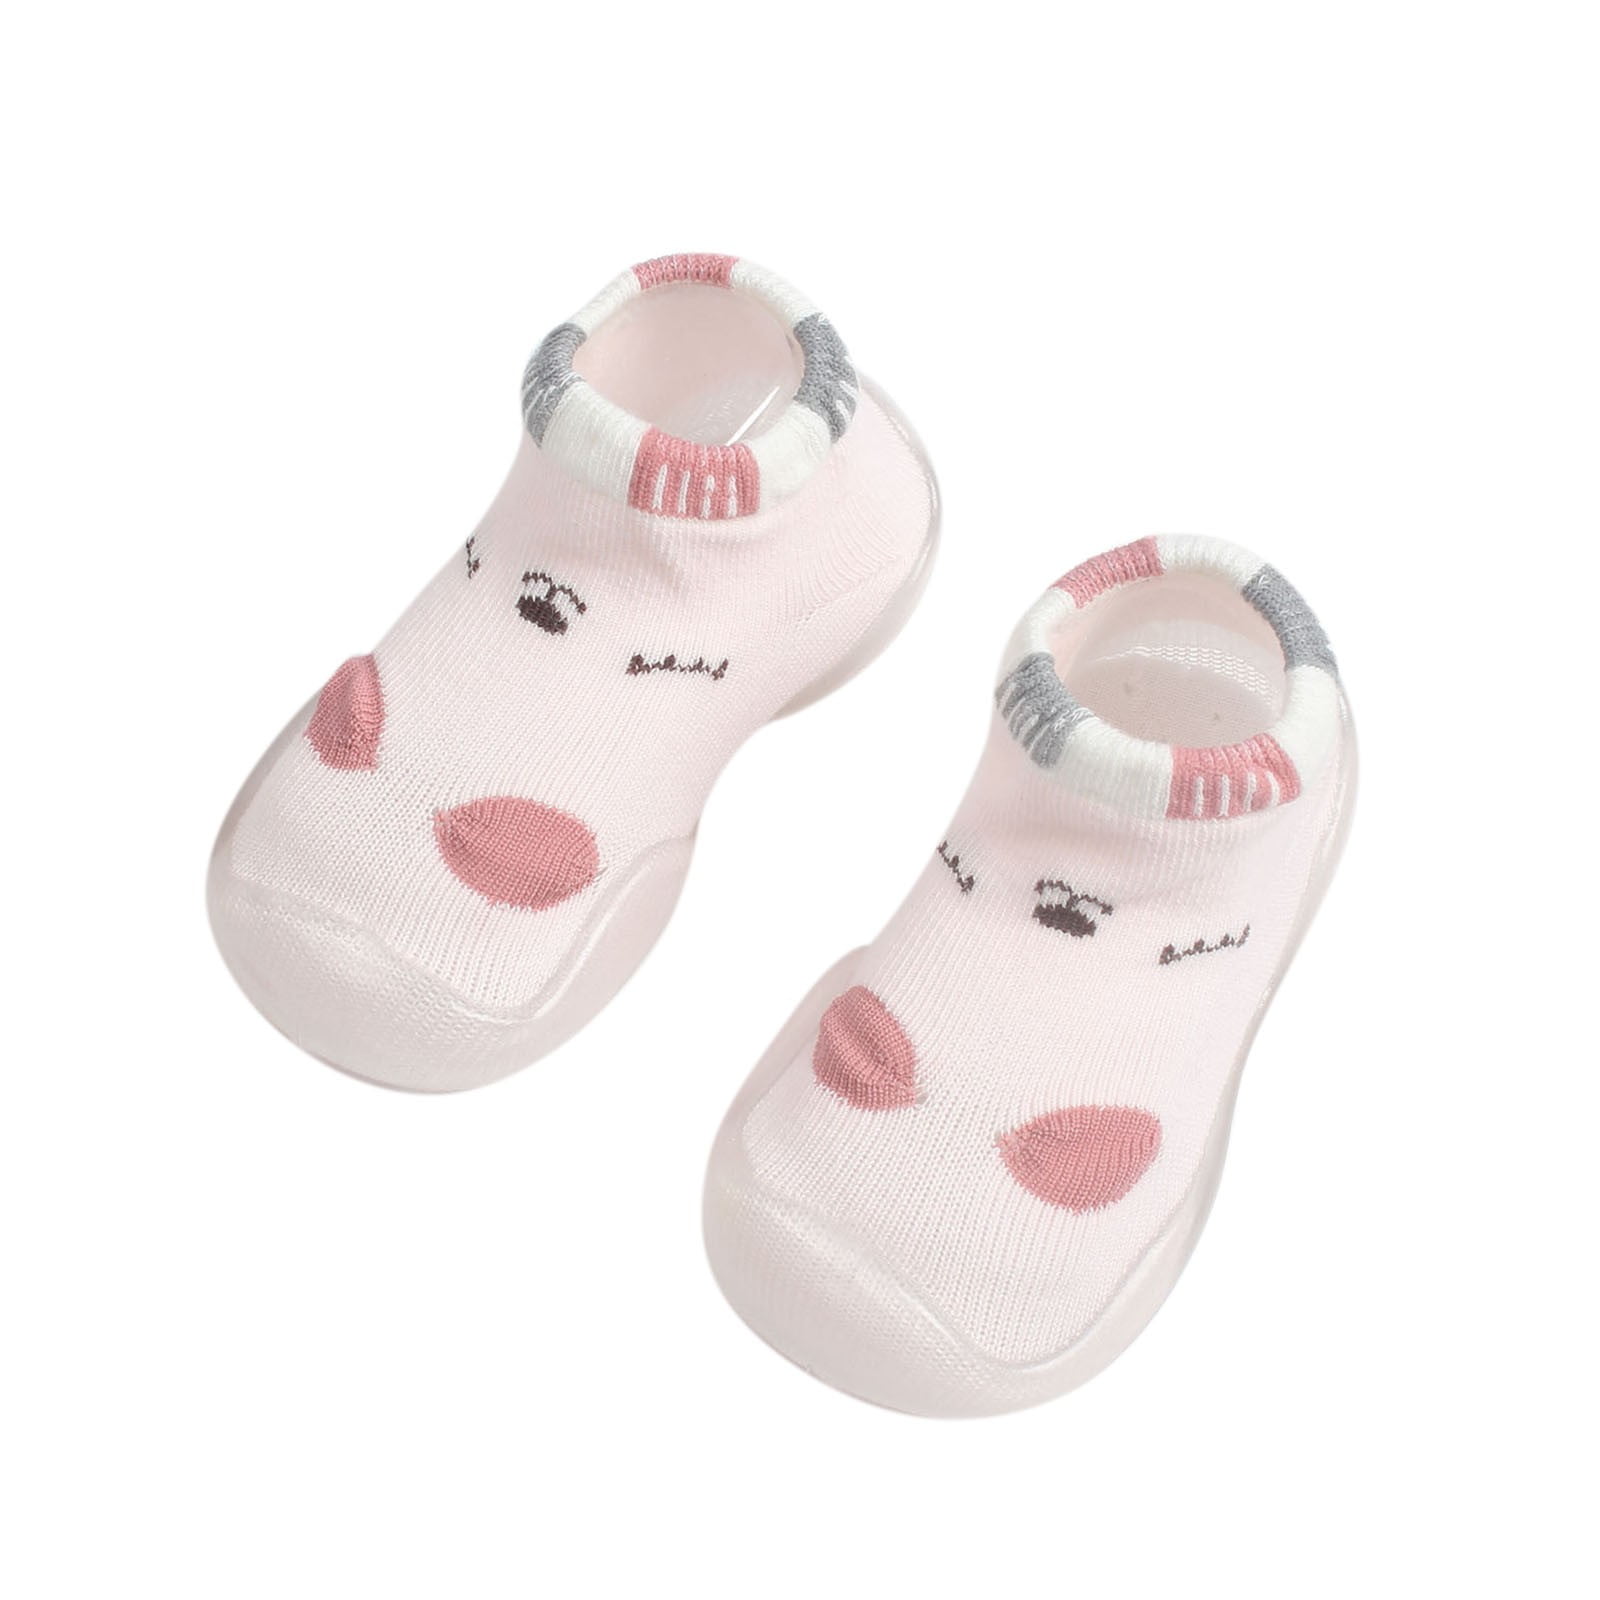 TAIAOJING Baby Boy Girls Sock Shoes Toddler Cute Cartoon Pattern ...